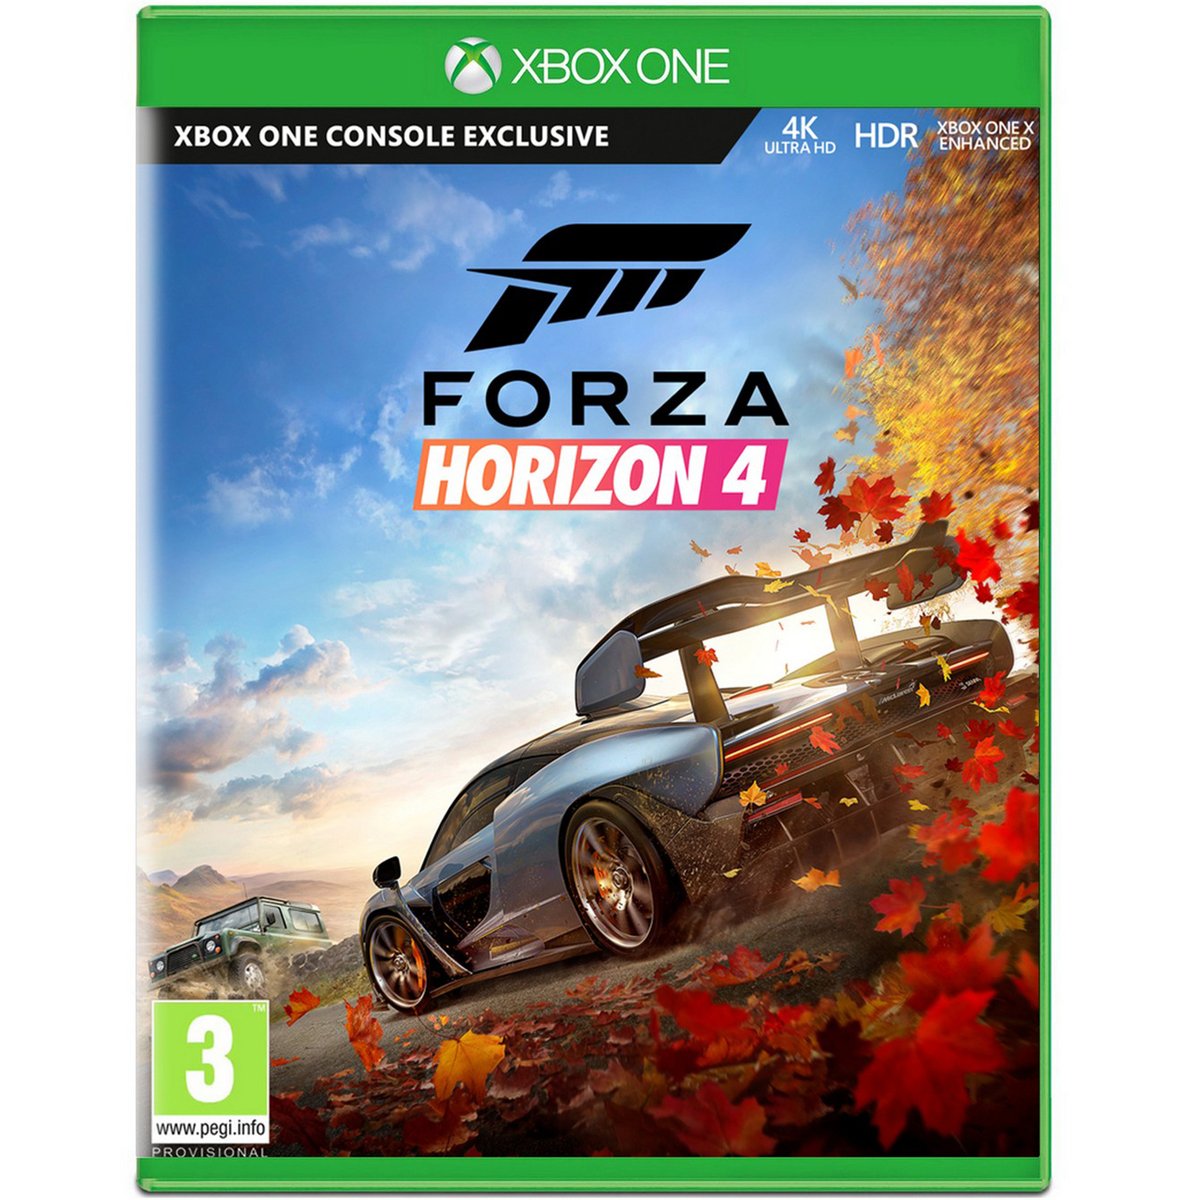 XBox One Forza: Horizon 4